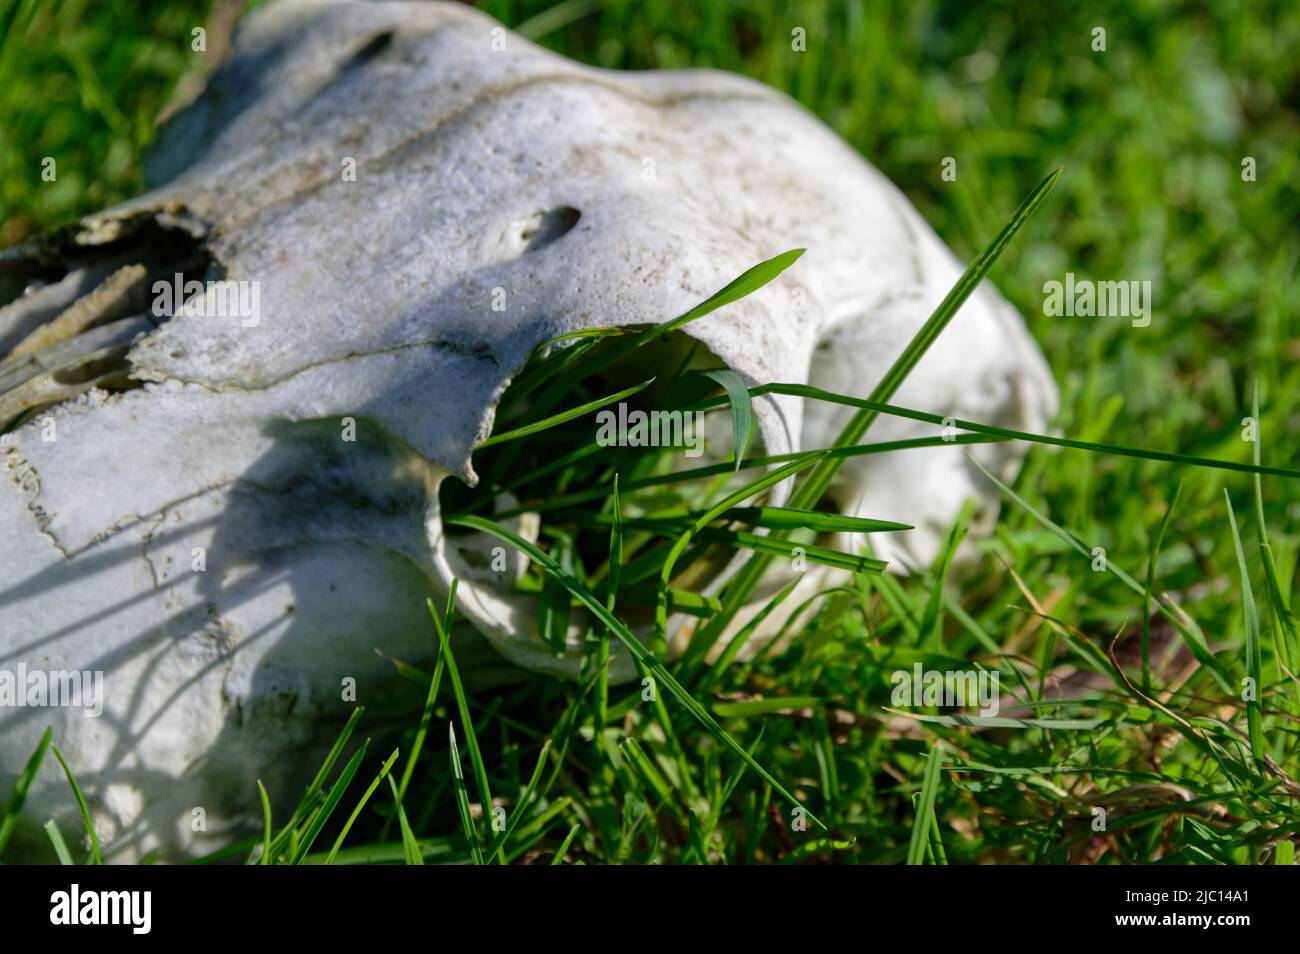 La hierba está creciendo fuera de la cavidad del ojo de un cráneo animal demostrando el ciclo de la vida como el cráneo se descompone naturalmente. Foto de stock